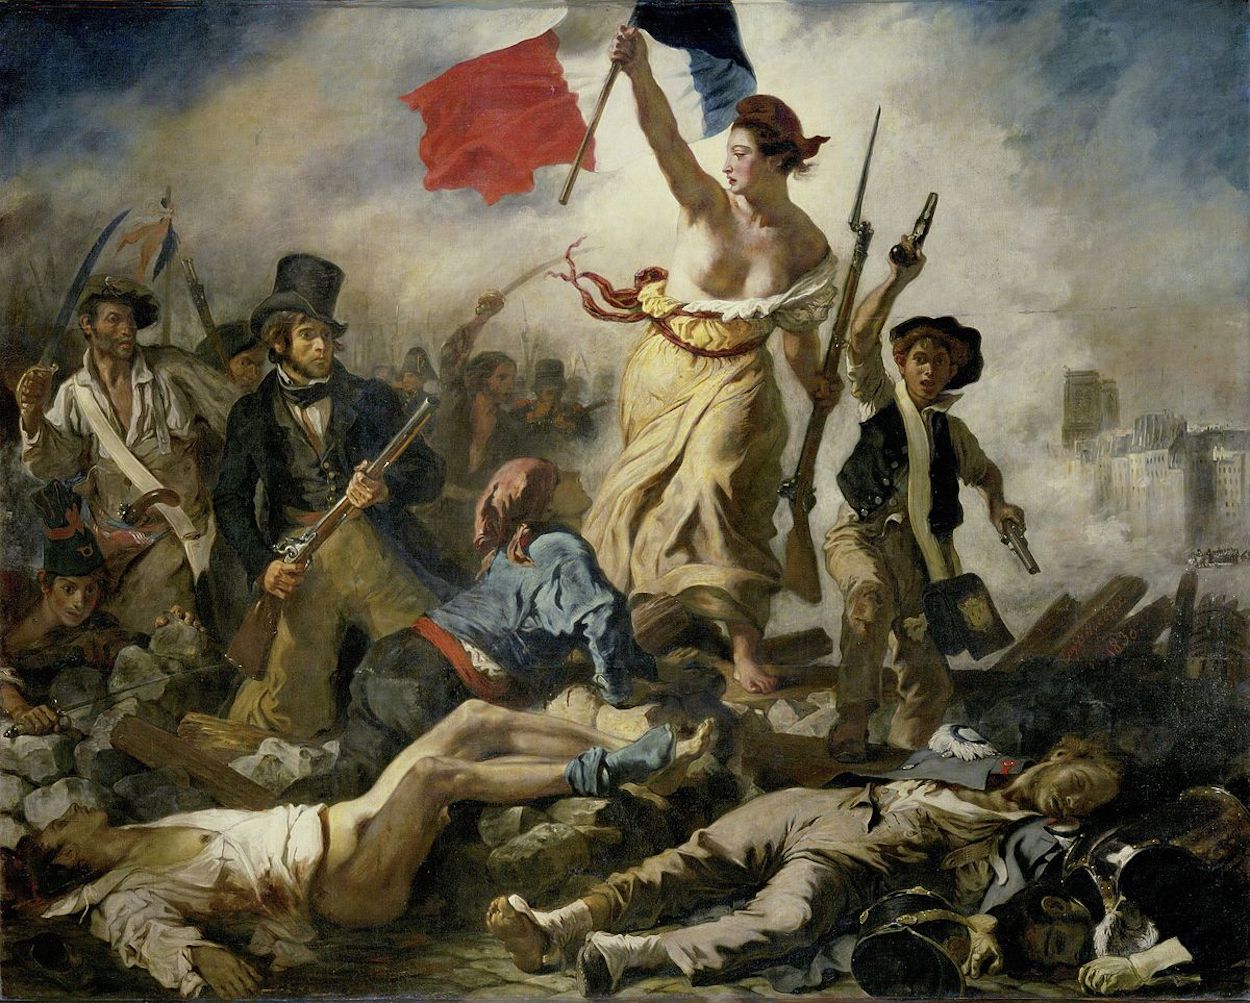 A szabadság vezeti a népet by Eugène Delacroix - 1830 - 260 cm x 325 cm 